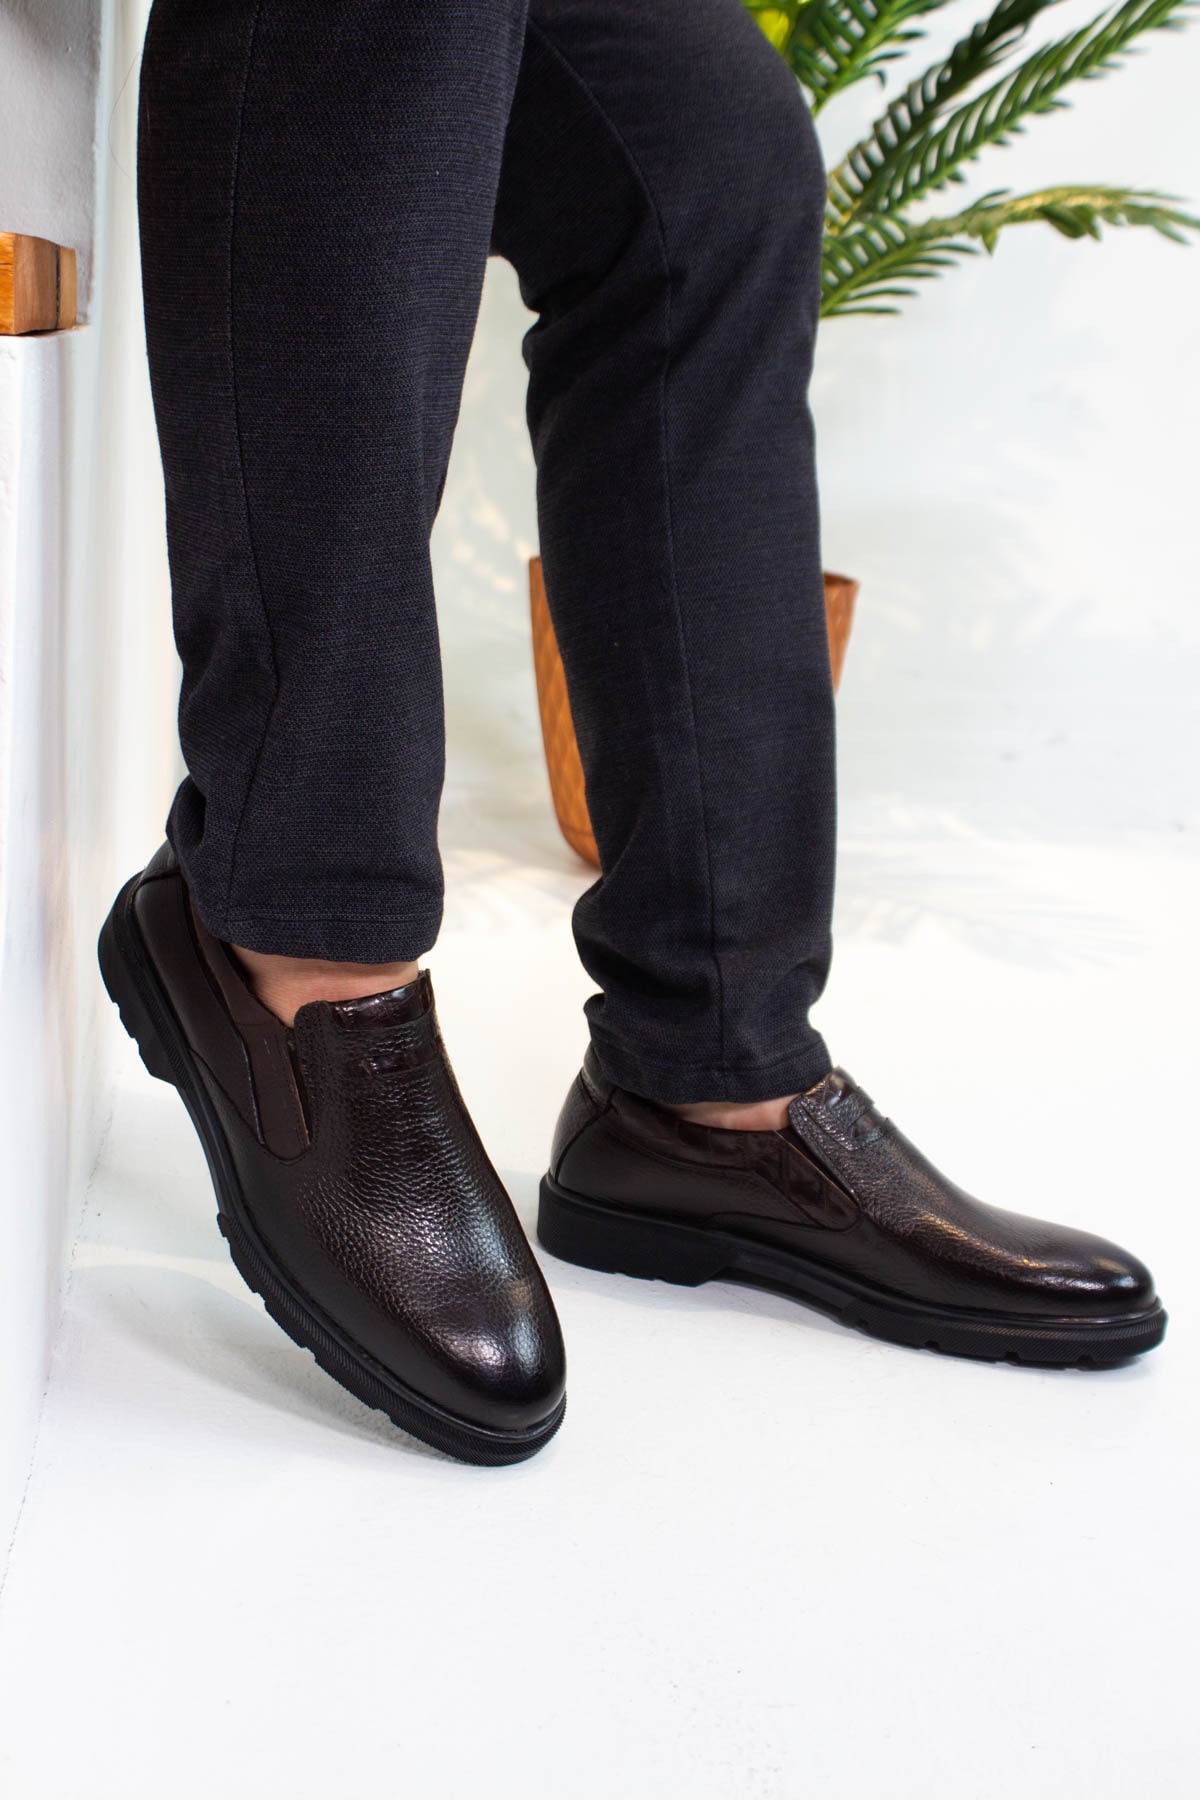 AfkaCollection Elyapımı Erkek Ayakkabı Comfort,oxford %100 Hakiki Floter Baskılı Deri...